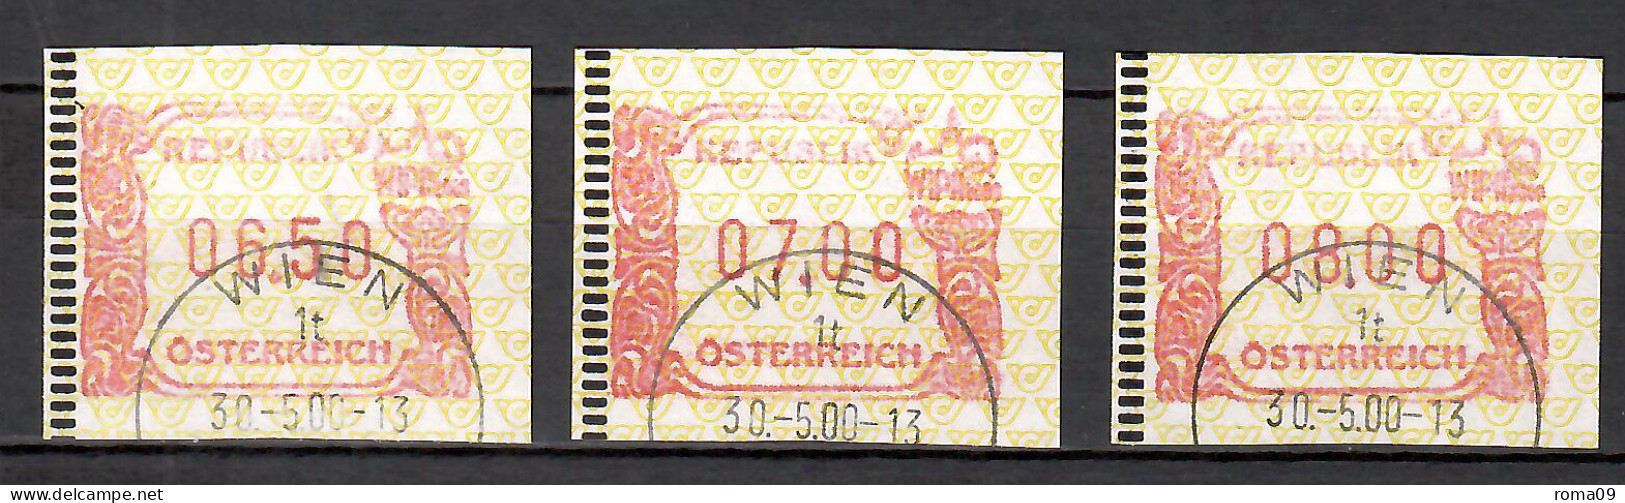 MiNr. ATM 4 (3x), Internationale Briefmarkenausstellung WIPA 2000, Wien; Gestempelt; A - Machine Labels [ATM]